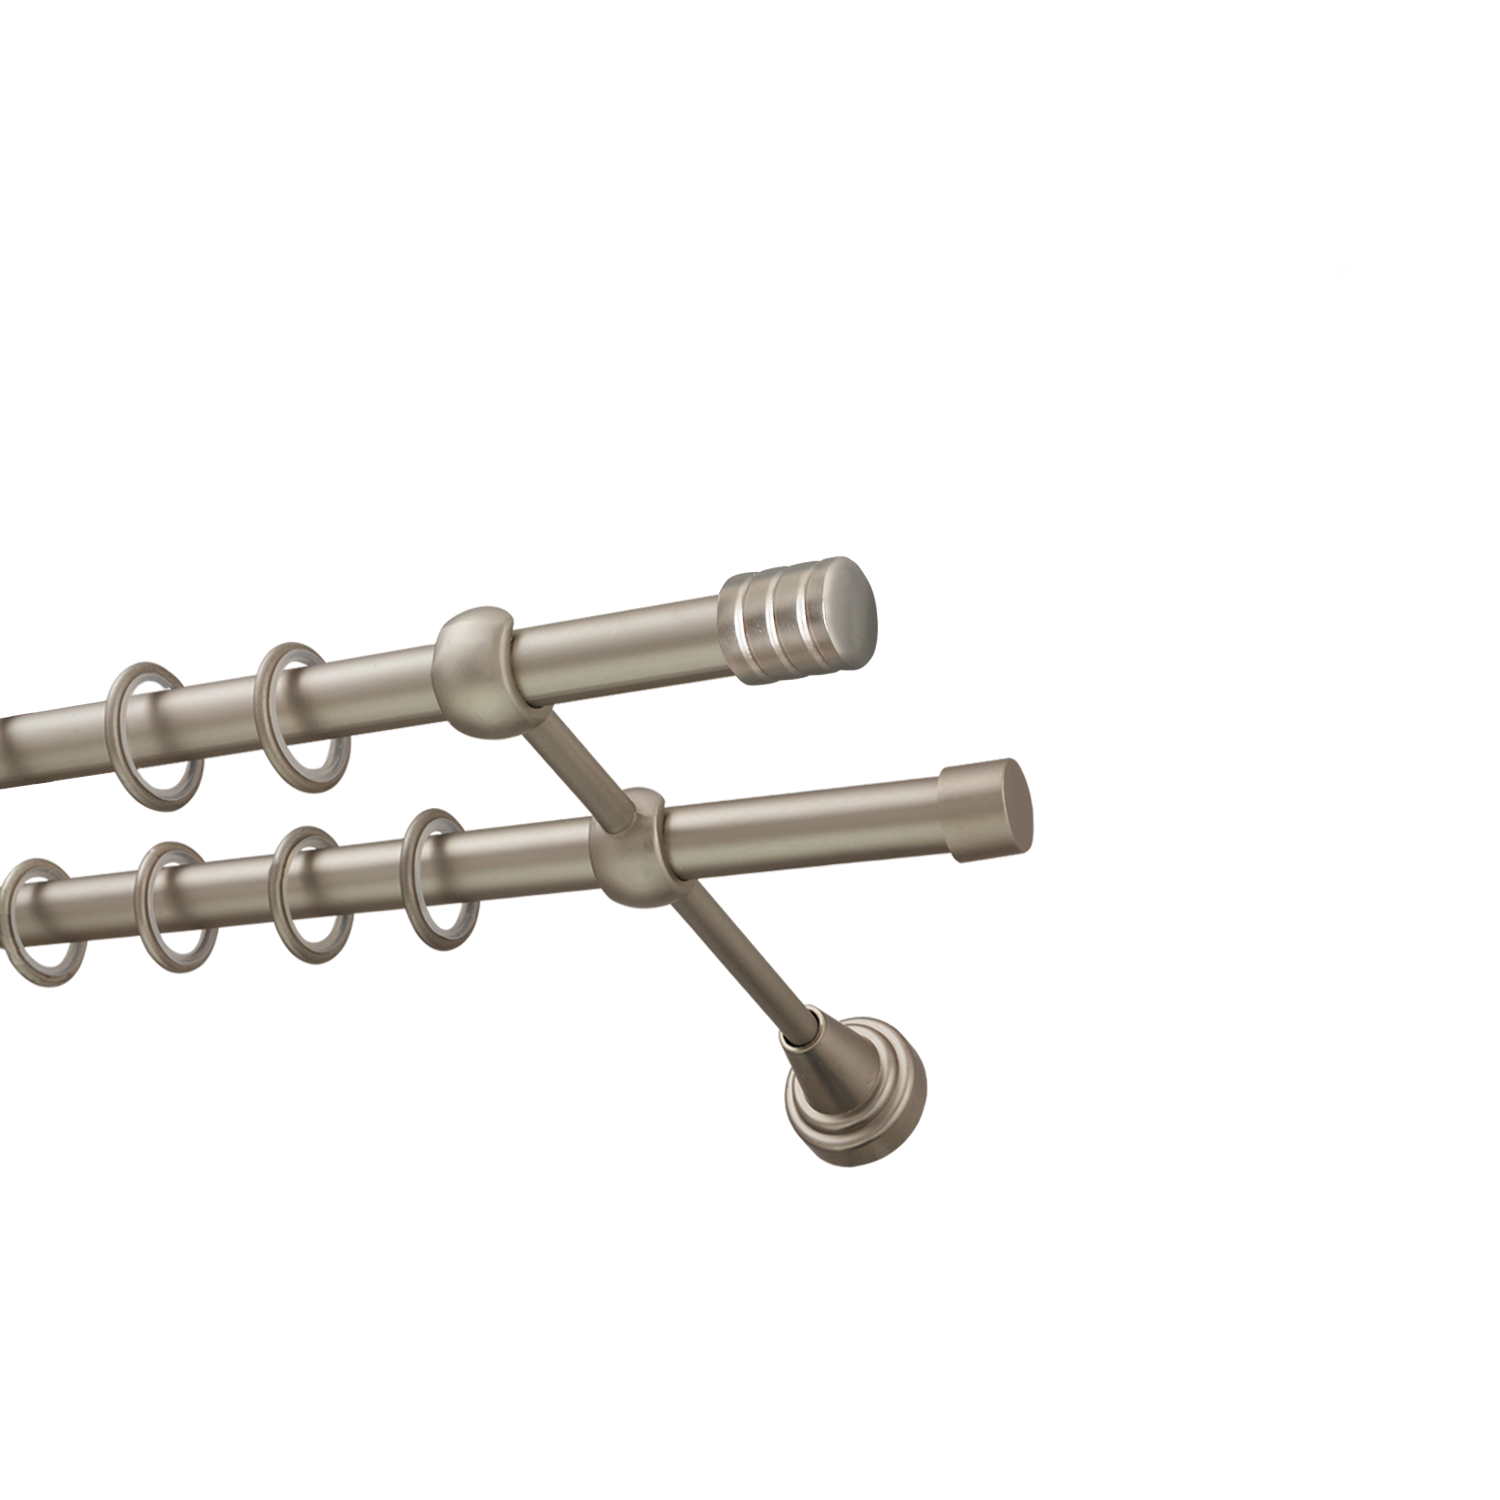 Металлический карниз для штор Подиум, двухрядный 16/16 мм, сталь, гладкая штанга, длина 180 см - фото Wikidecor.ru